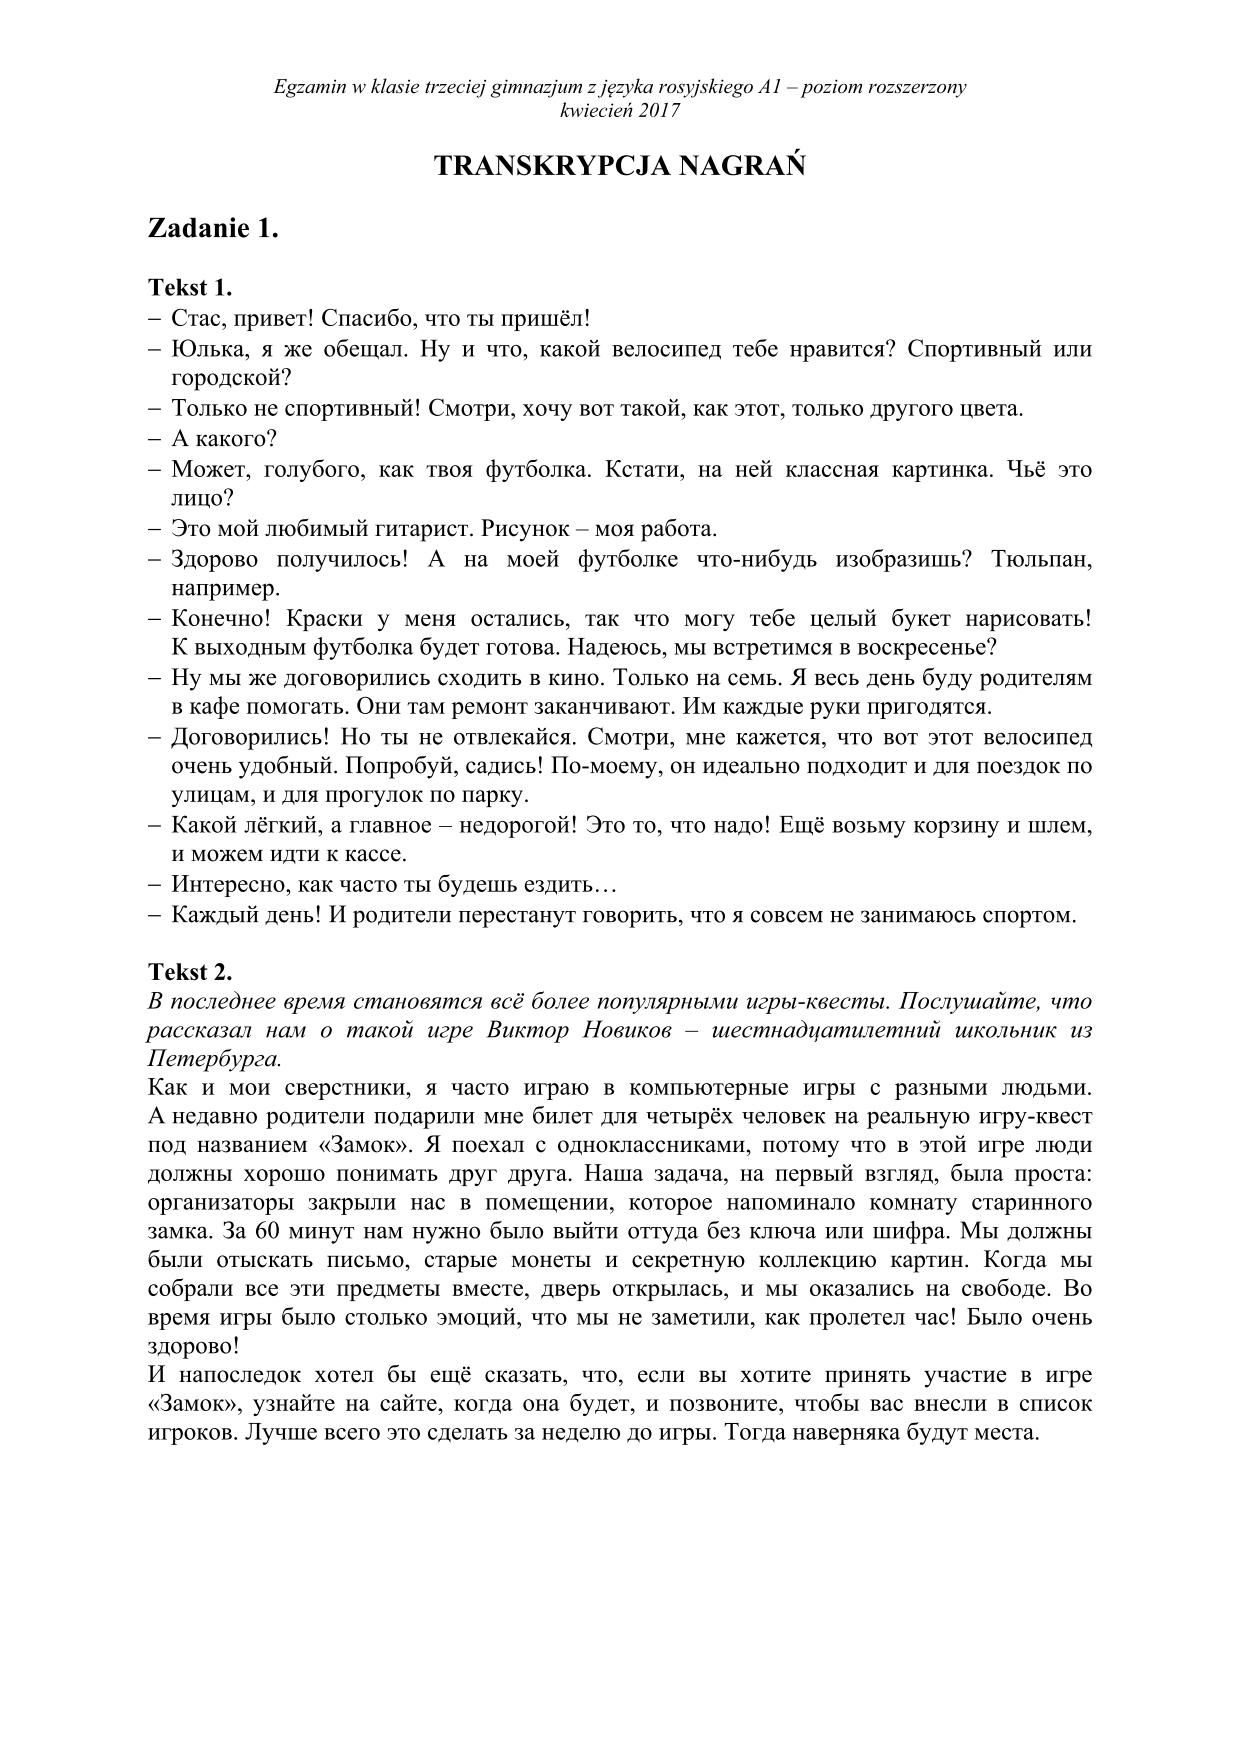 transkrypcja-rosyjski-poziom-rozszerzony-egzamin-gimnazjalny-2017 - 1